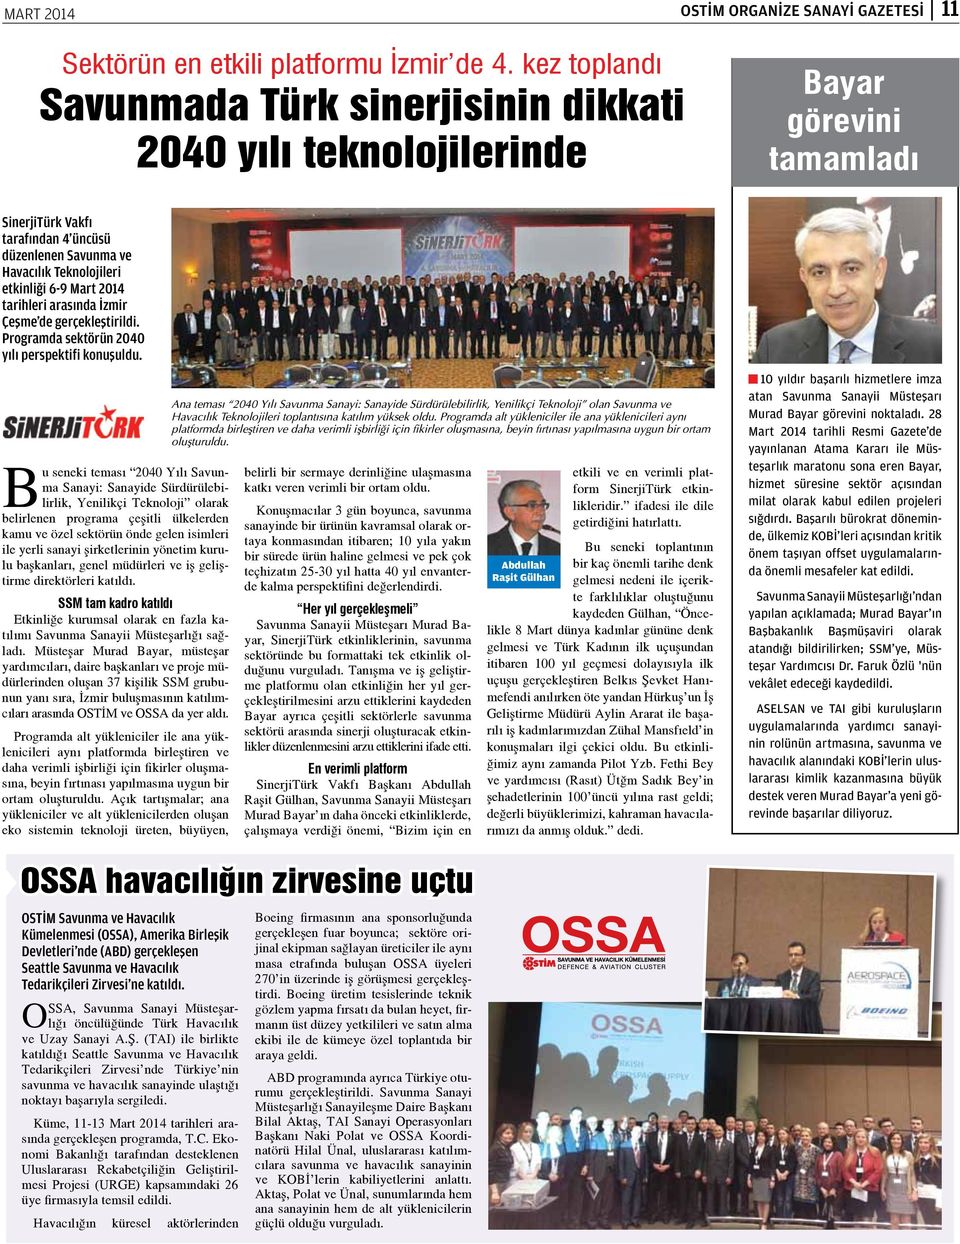 Mart 2014 tarihleri arasında İzmir Çeşme de gerçekleştirildi. Programda sektörün 2040 yılı perspektifi konuşuldu.